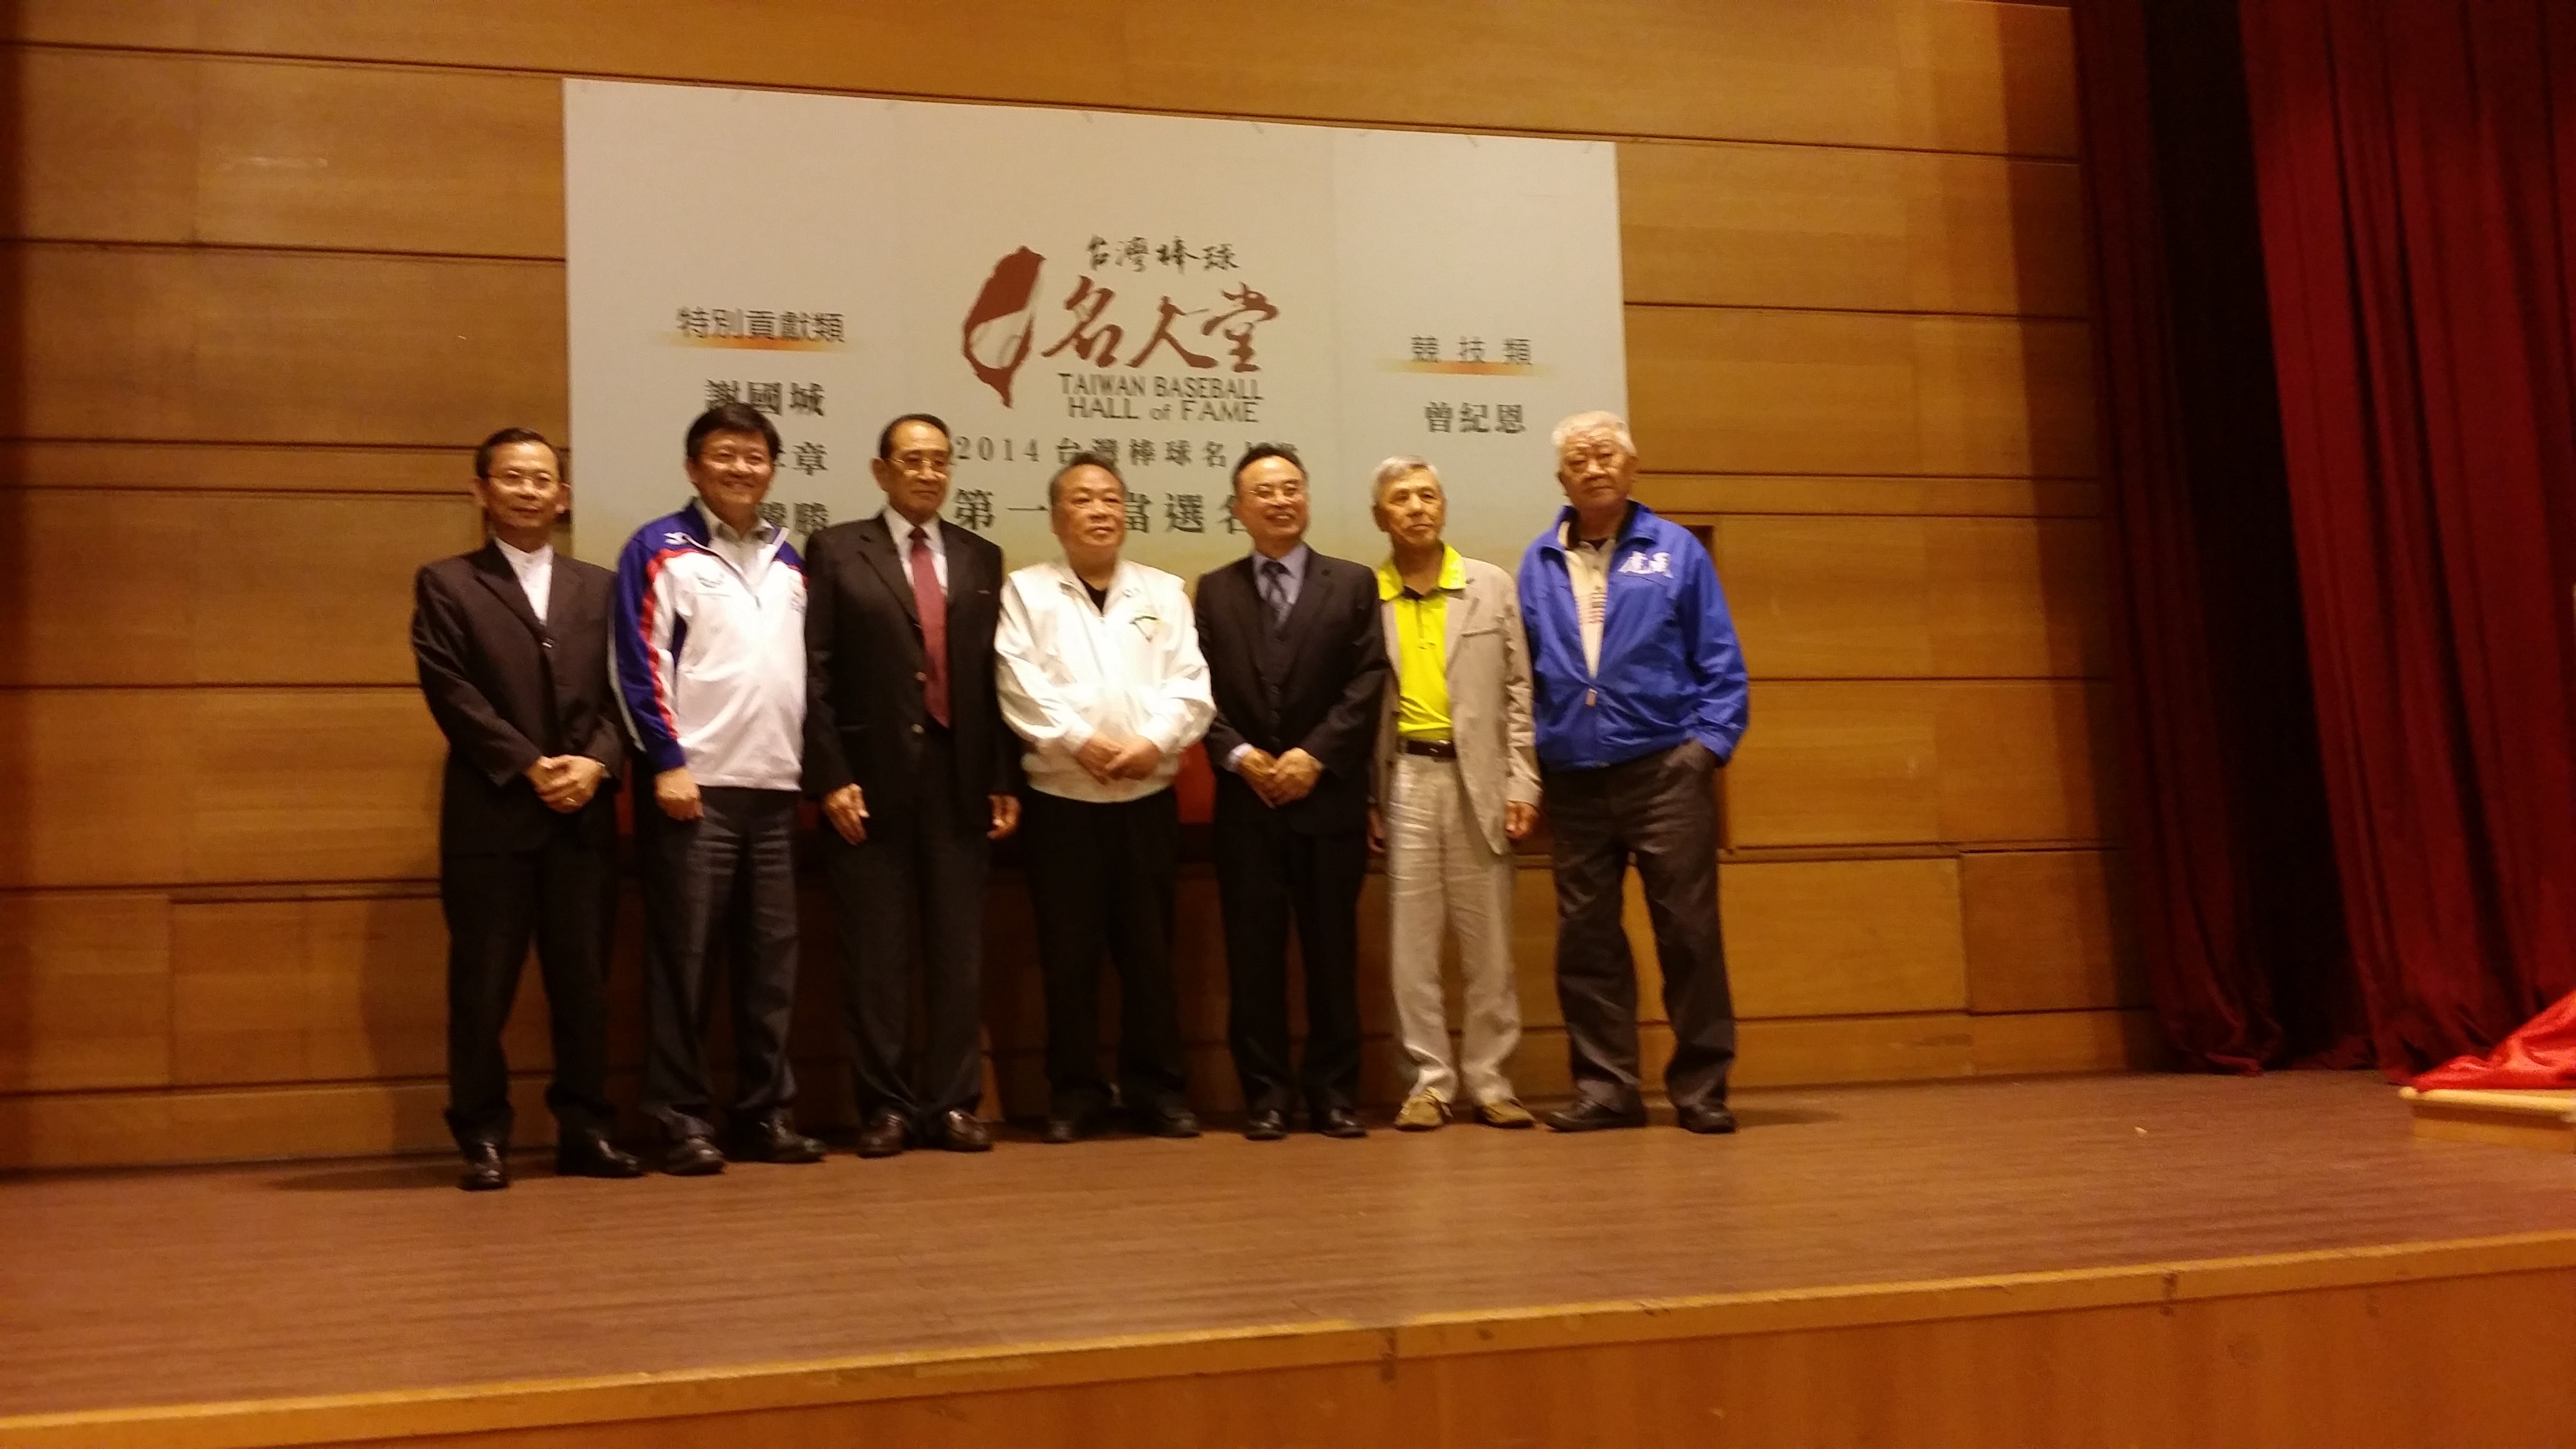 台灣棒球名人堂協會頒發特別貢獻獎給『棒球之父』謝國城先生